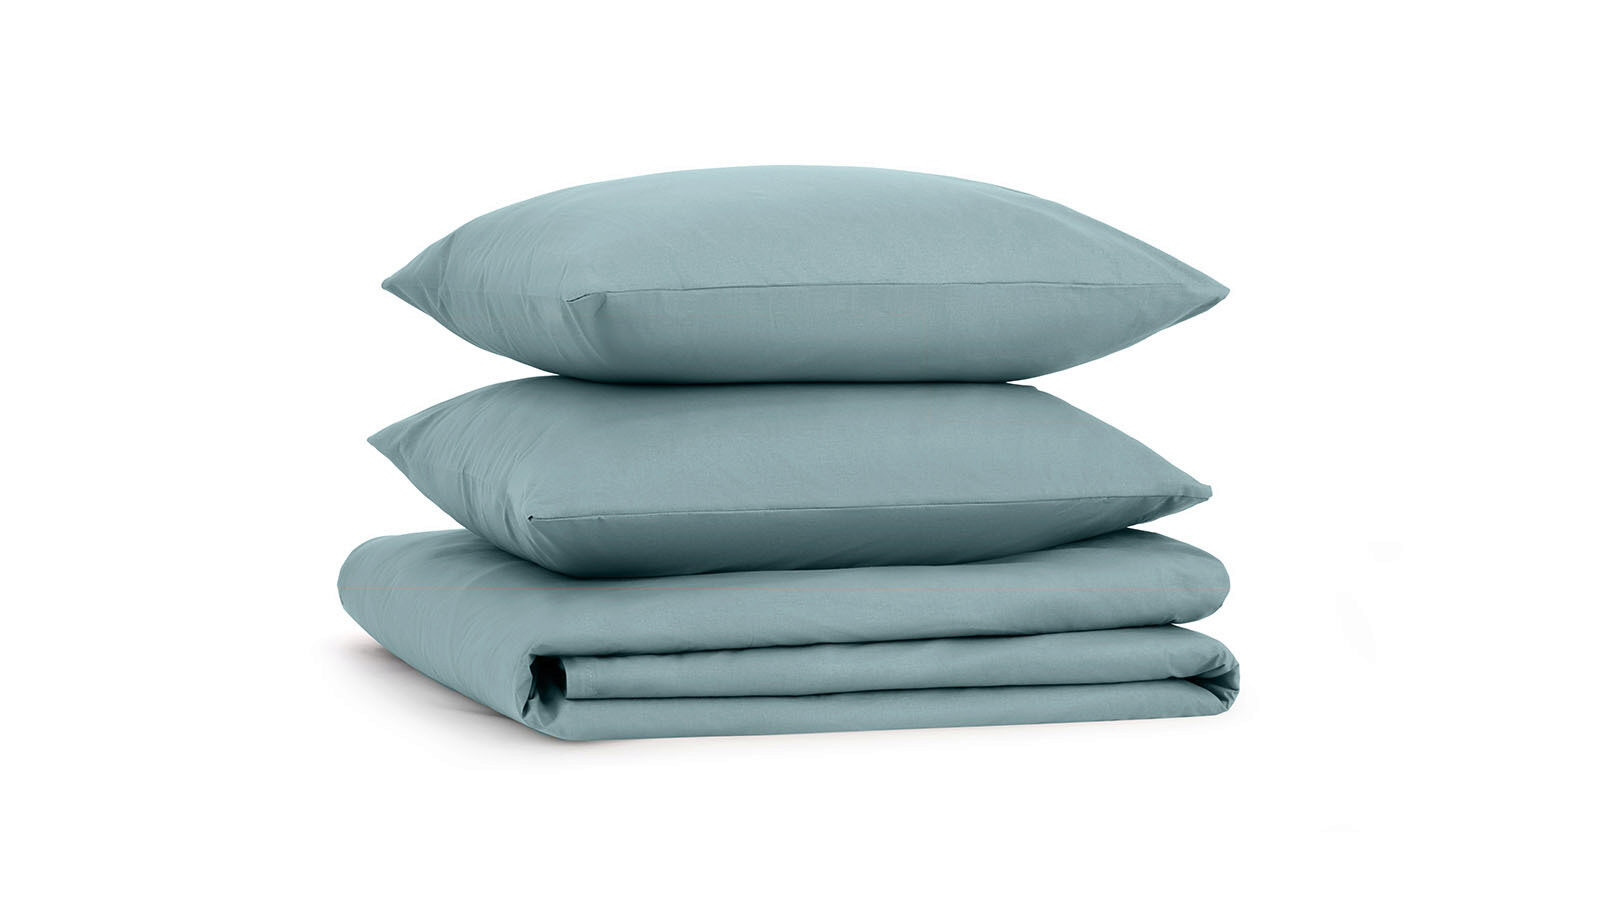 Постельное белье Comfort Cotton, цвет: Серо-голубой комплект одеяло beat подушка sky комплект постельного белья comfort cotton светло серый